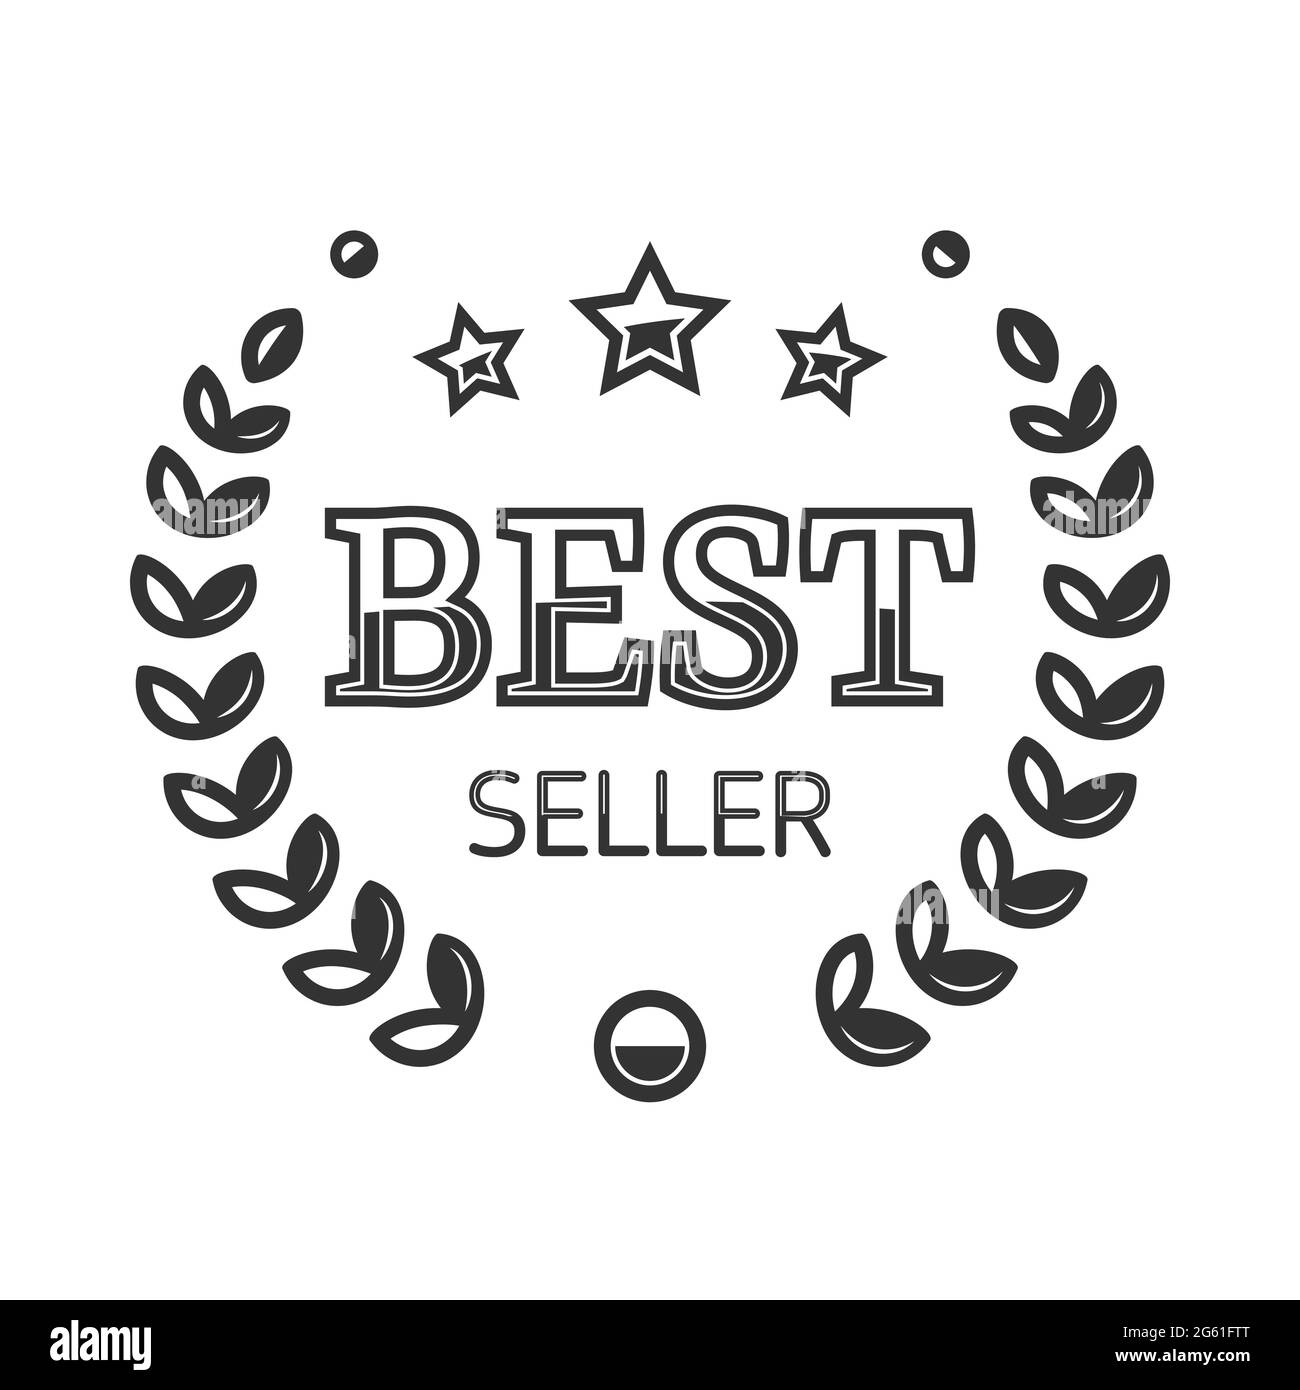 Best seller vector logo. Best seller label. Shopping rating symbol Stock  Vector Image & Art - Alamy